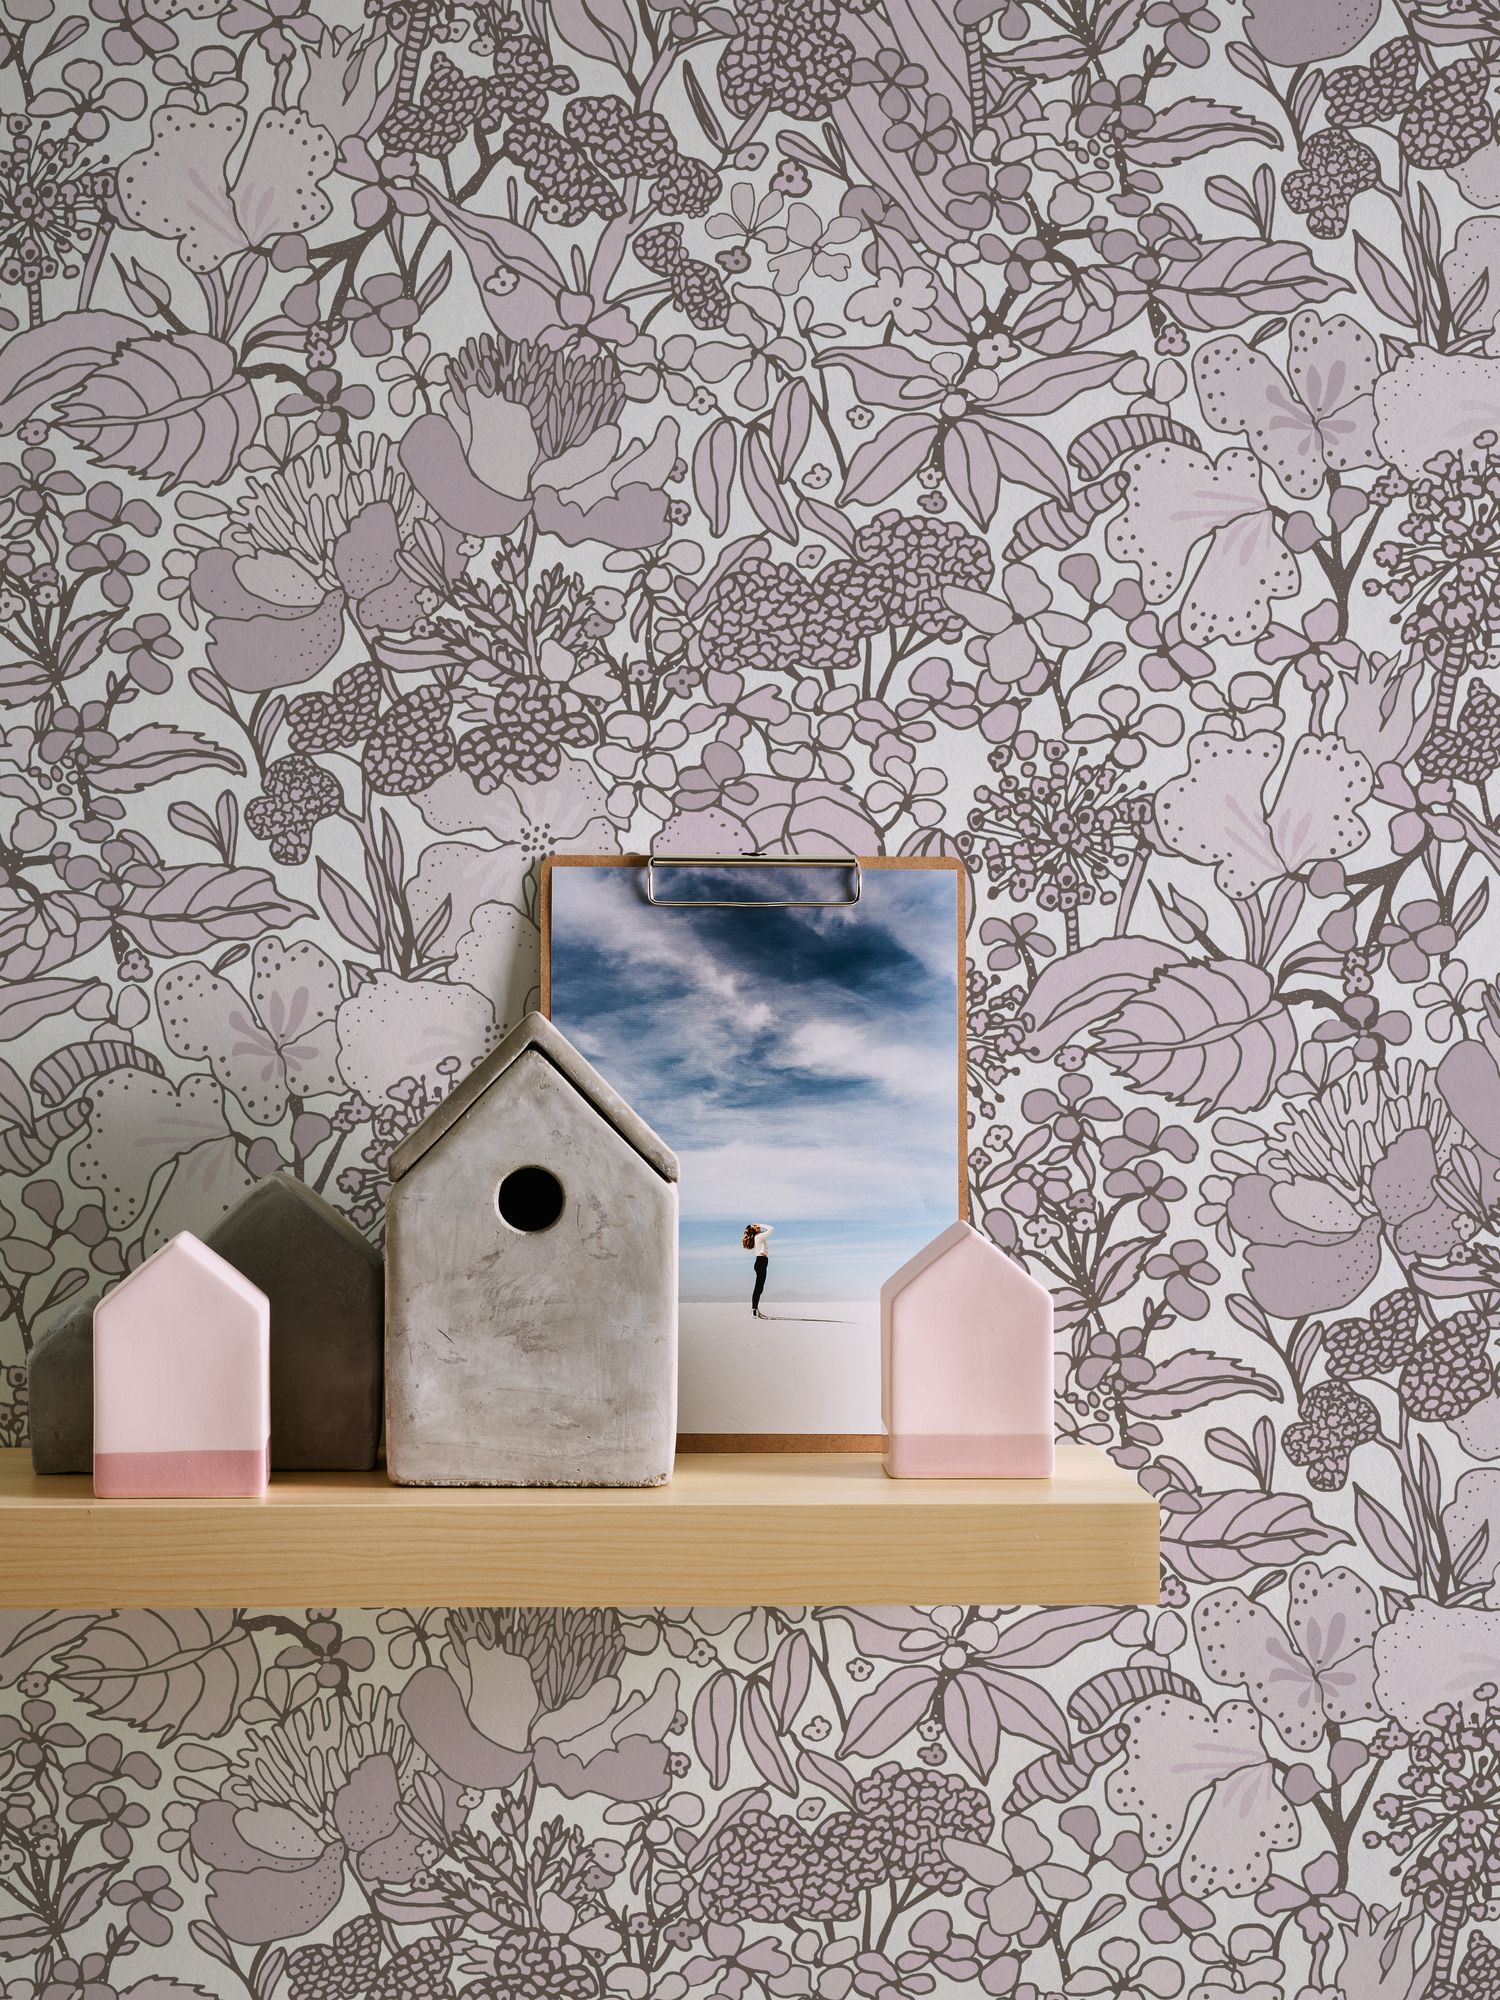 Architects Paper Floral Impression, Dschungeltapete, creme, braun 377565